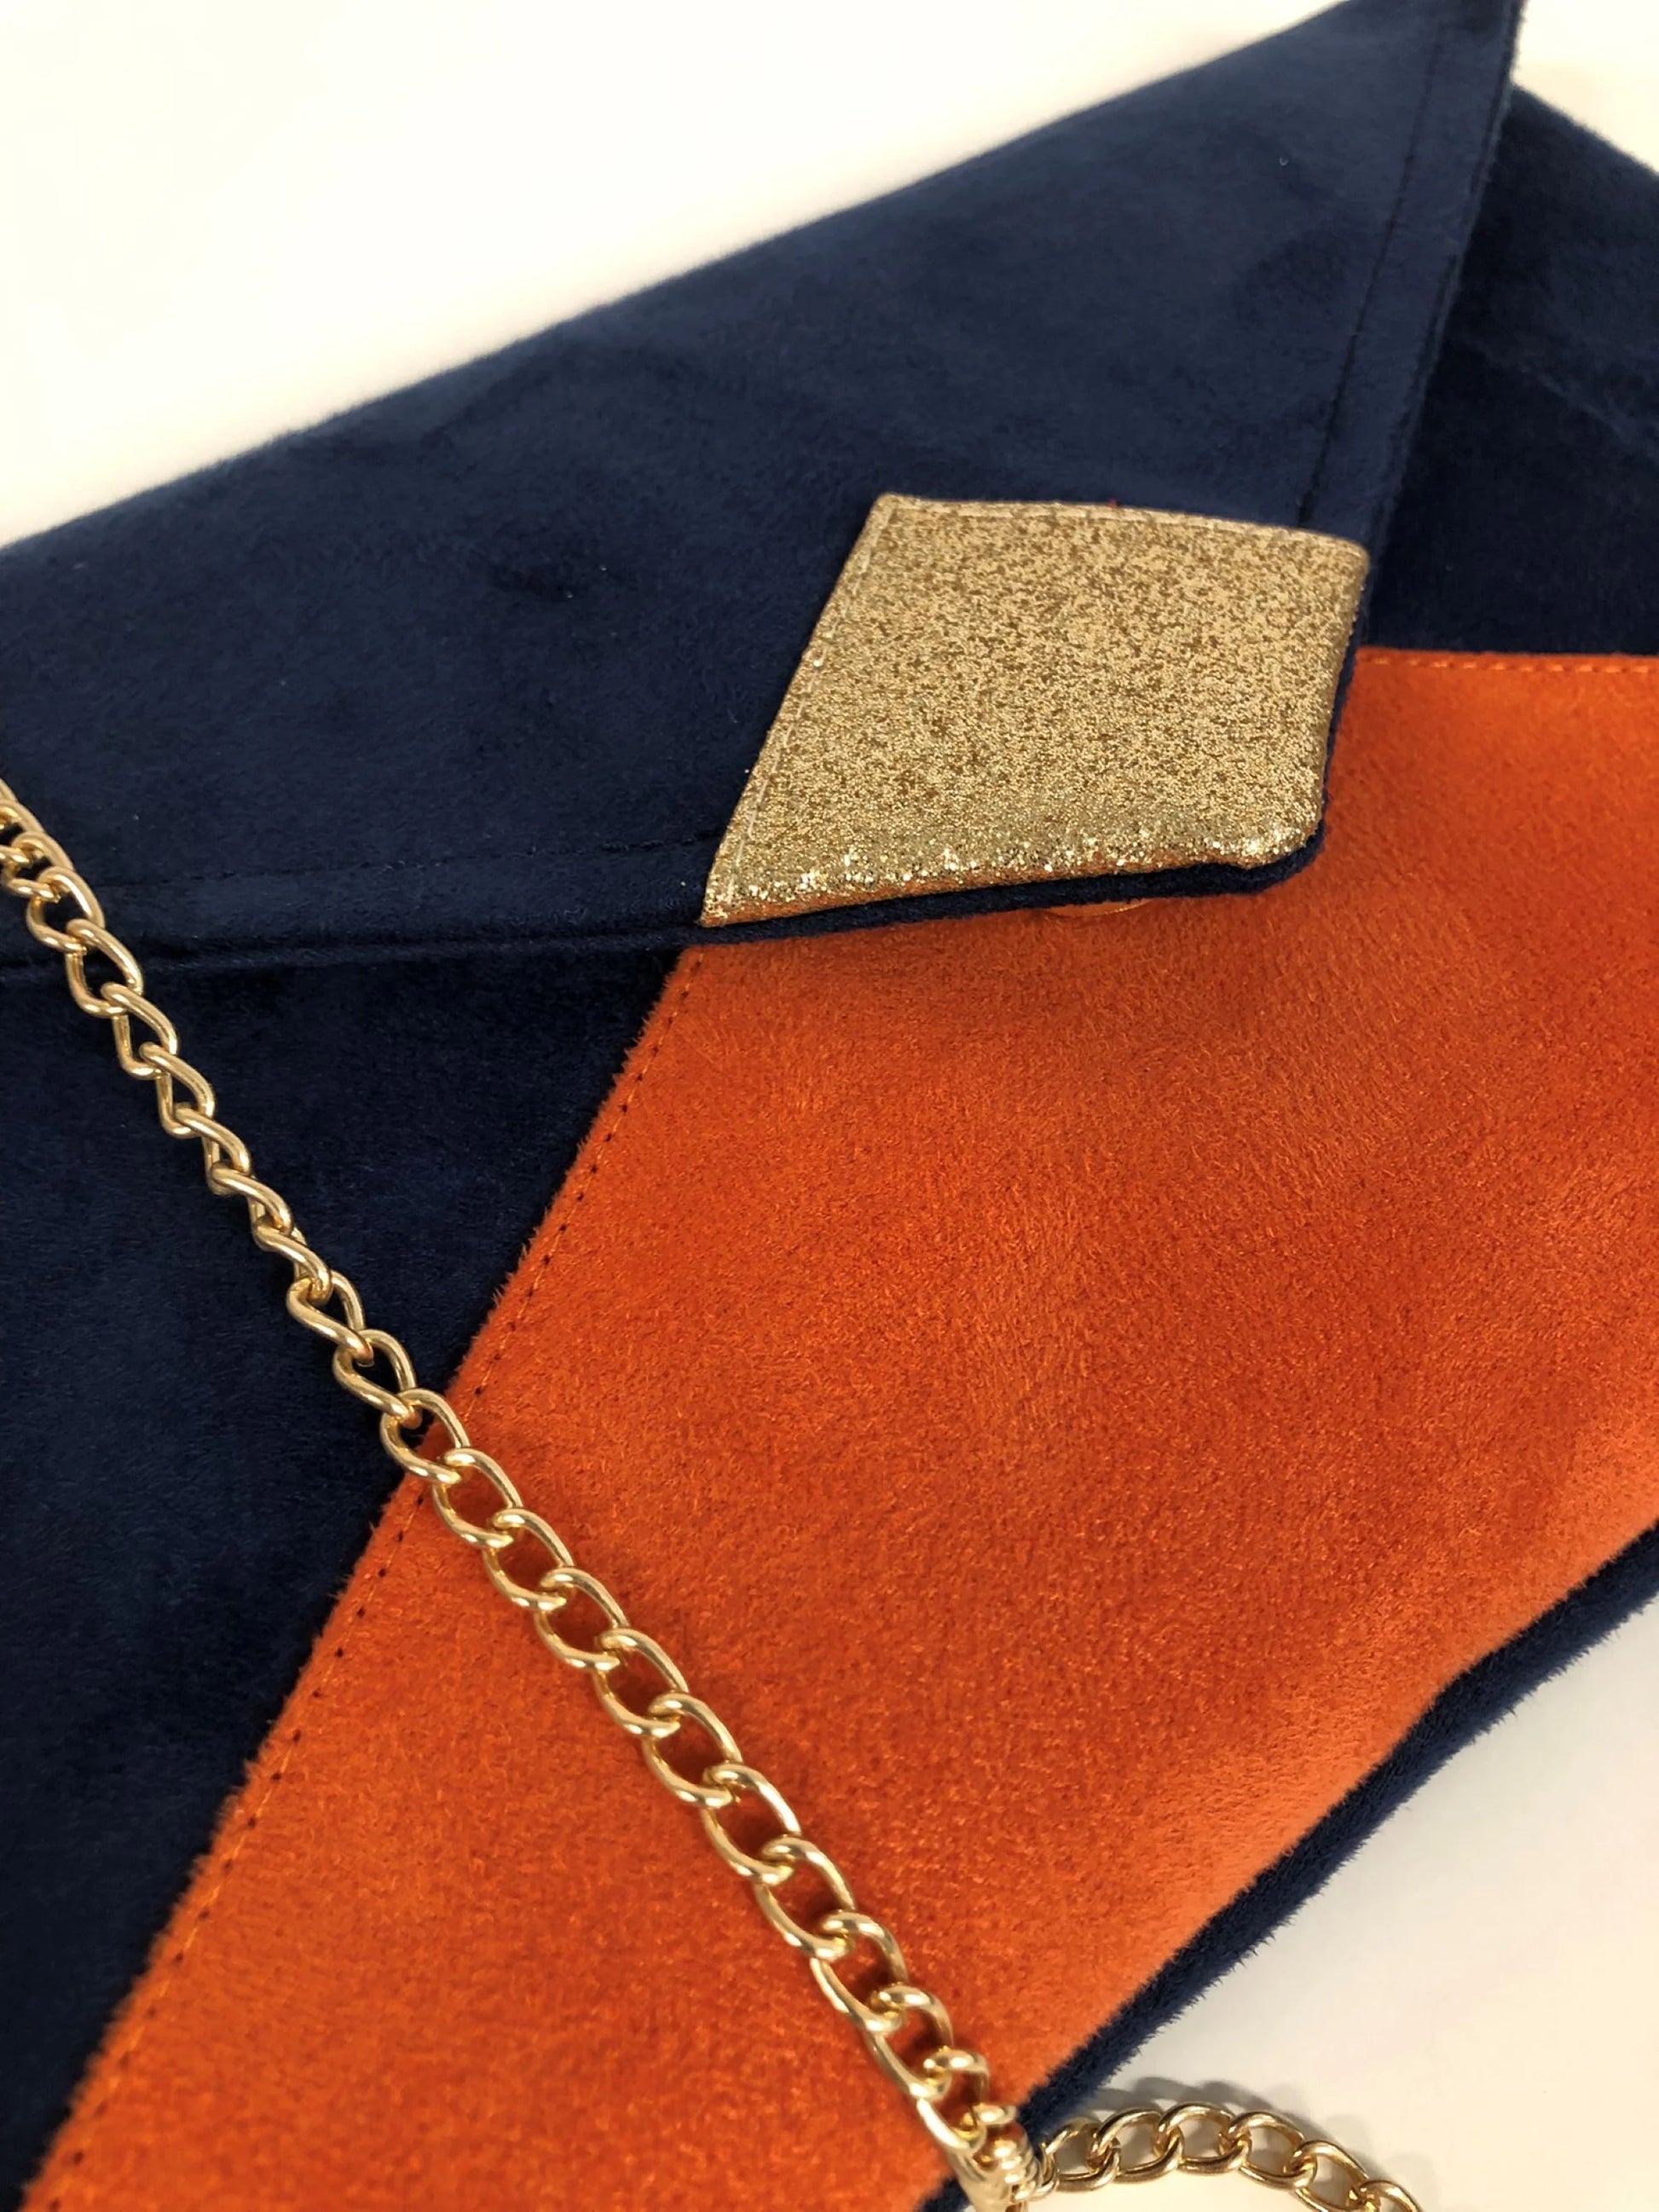 Vue détaillée du sac pochette Isa bleu marine et orange à paillettes dorées, avec chainette amovible.